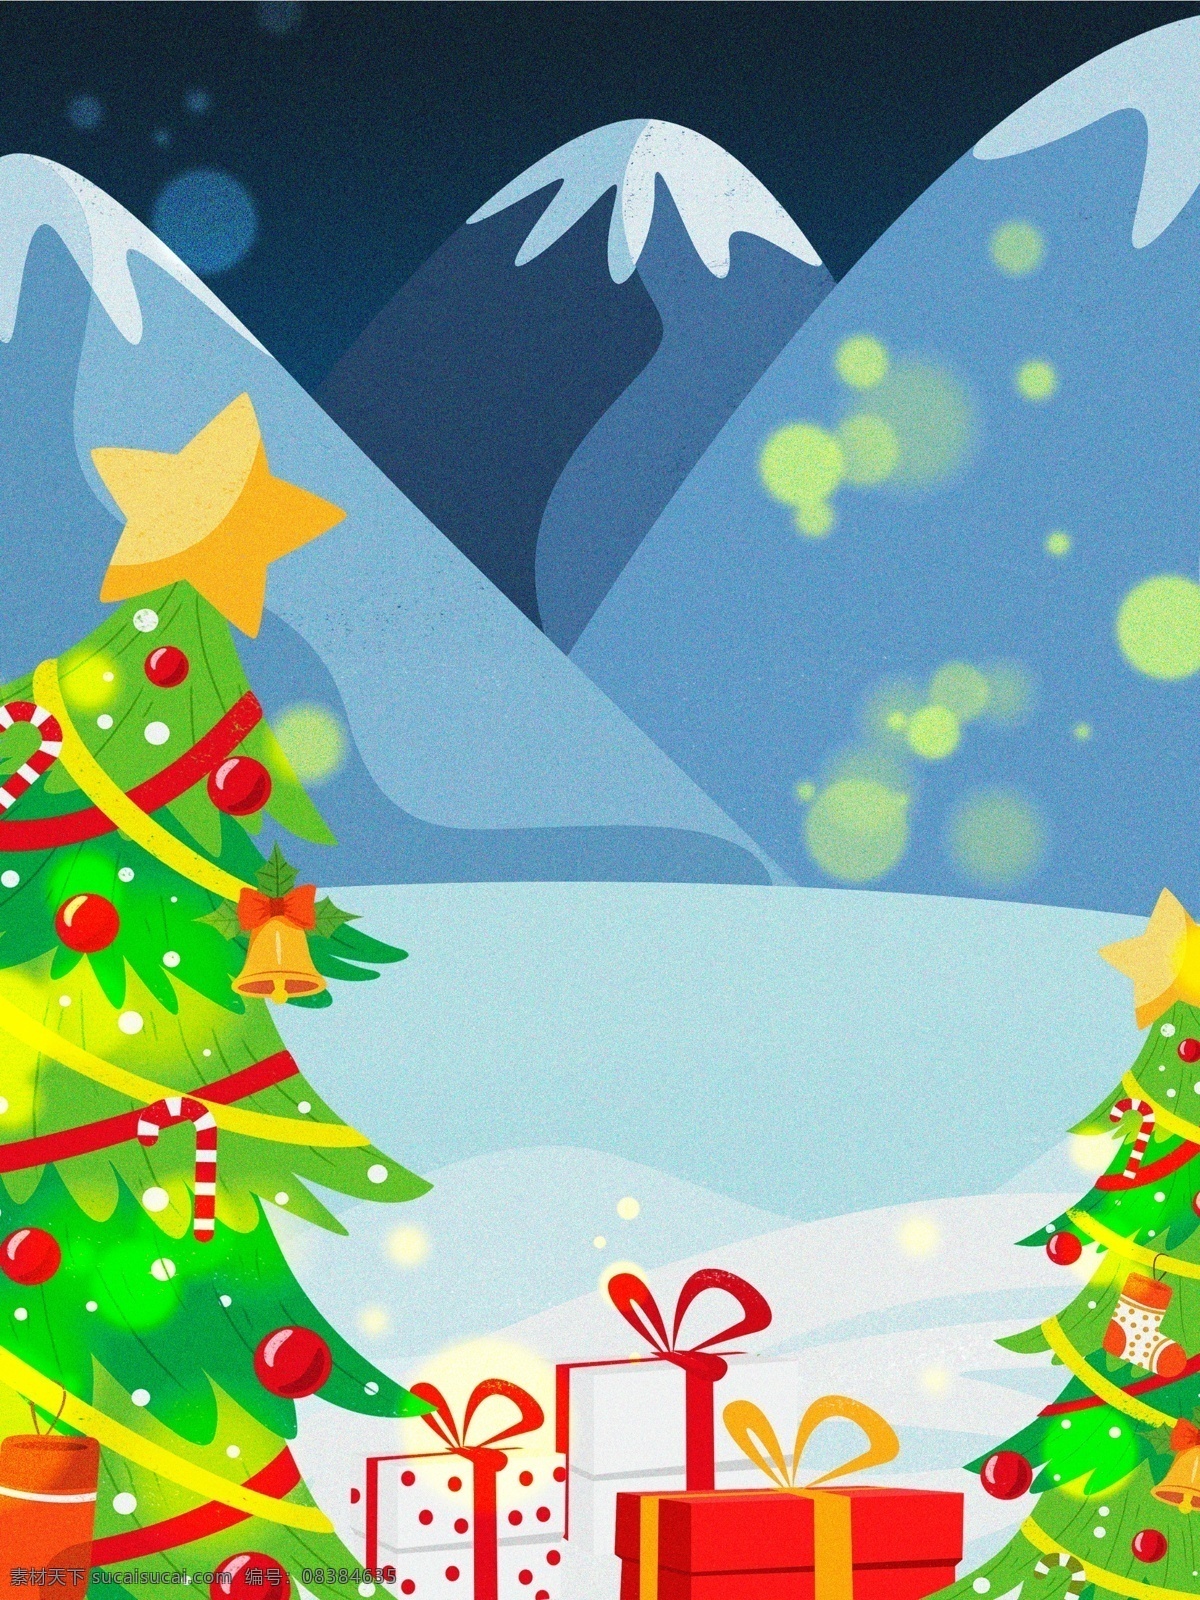 西方 节日 圣诞节 圣诞老人 送礼 驯鹿 插画 圣诞节促销 雪地 雪人 圣诞树 礼物 圣诞 背景